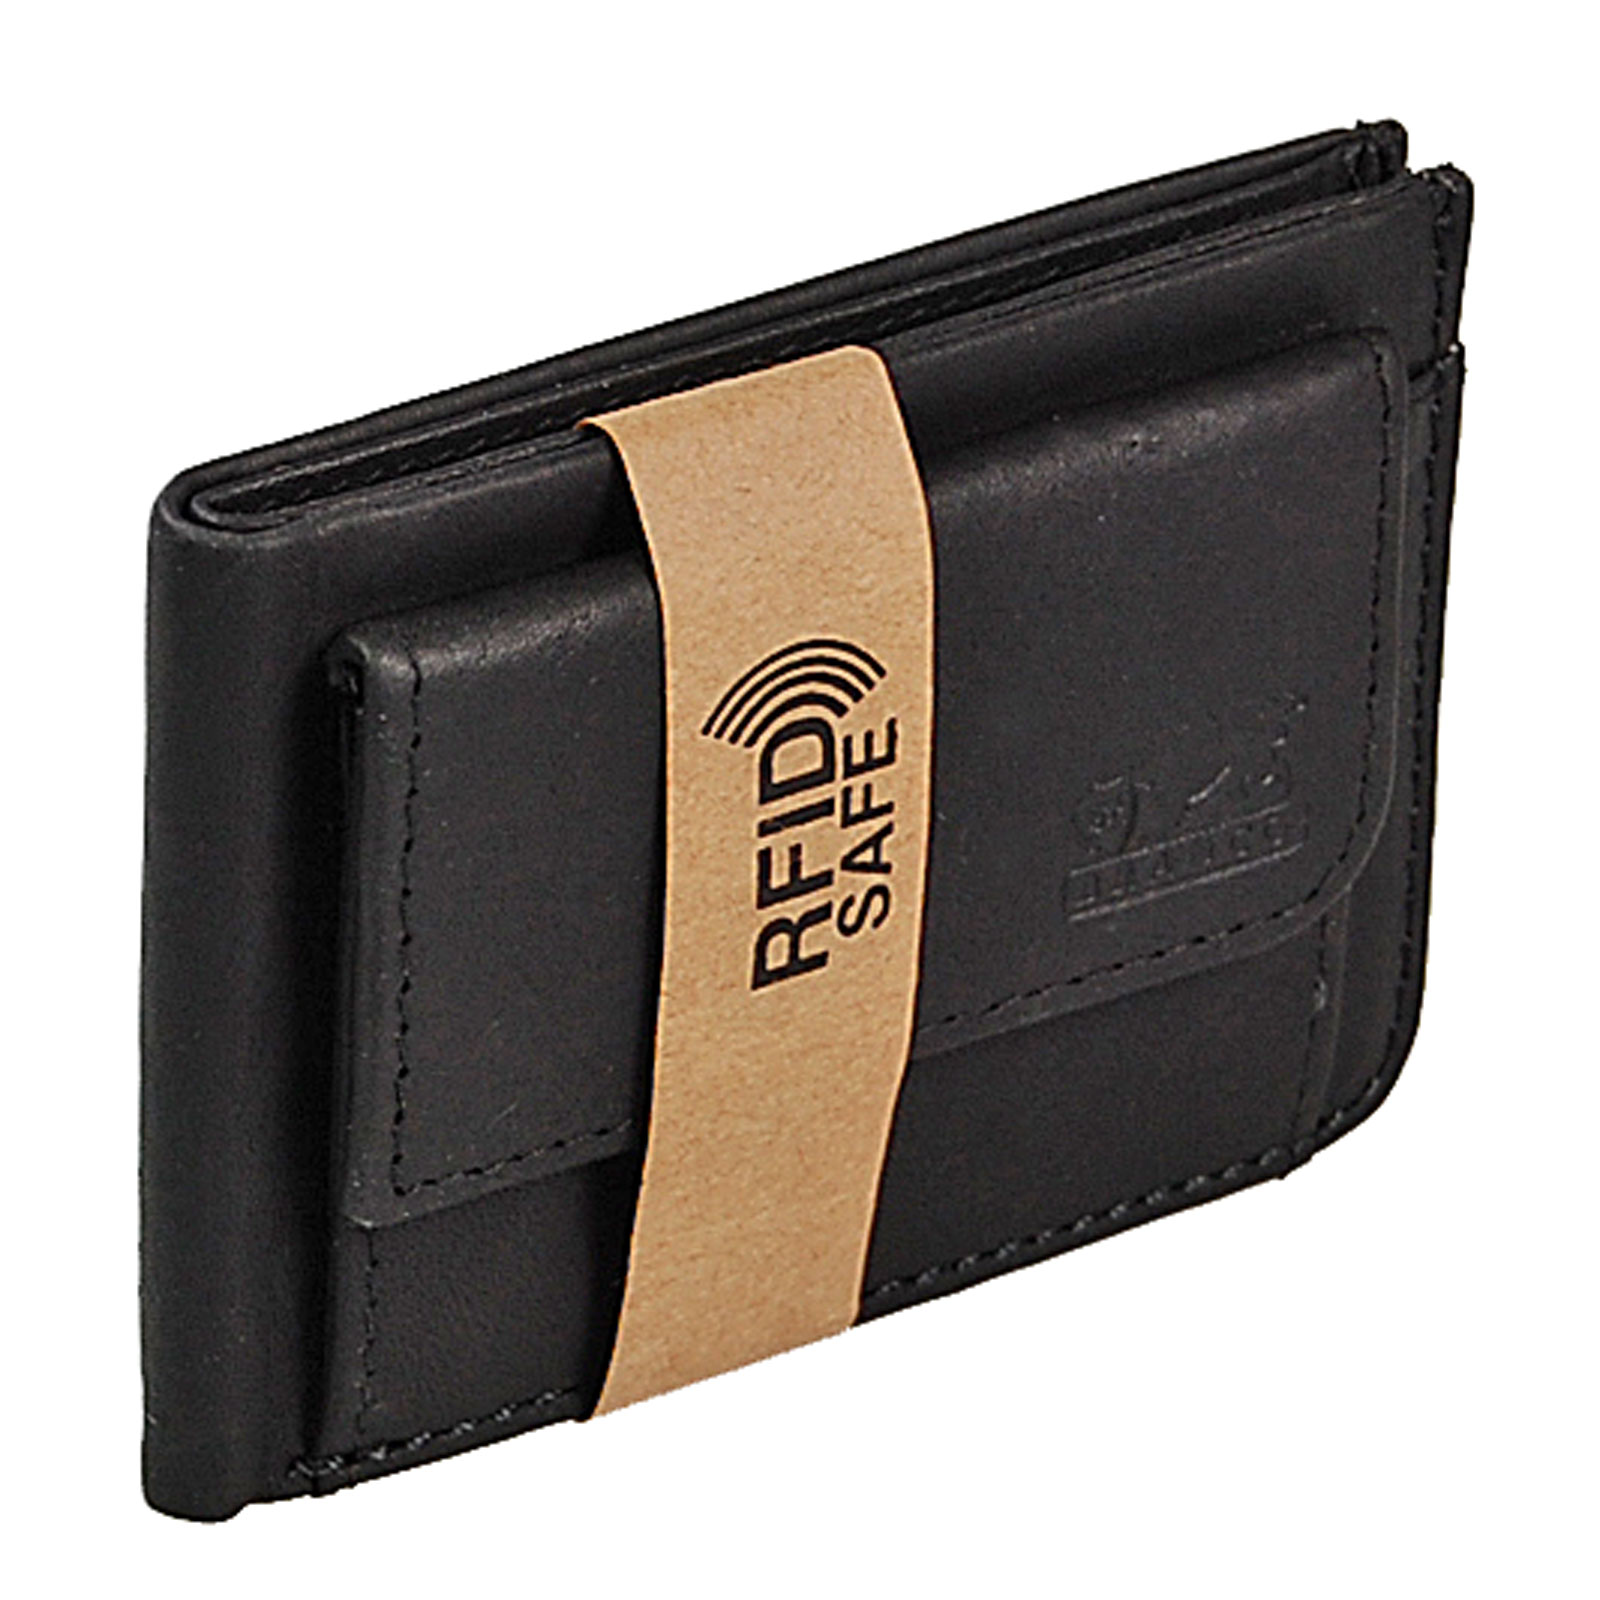 Geldbörse Herren aus echtem Leder RFID Blocking Wallet Platz für 7 Scheckkarten Kleiner Geldbeutel Männer mit Ausweisfach ideales Slim Wallet Herren 